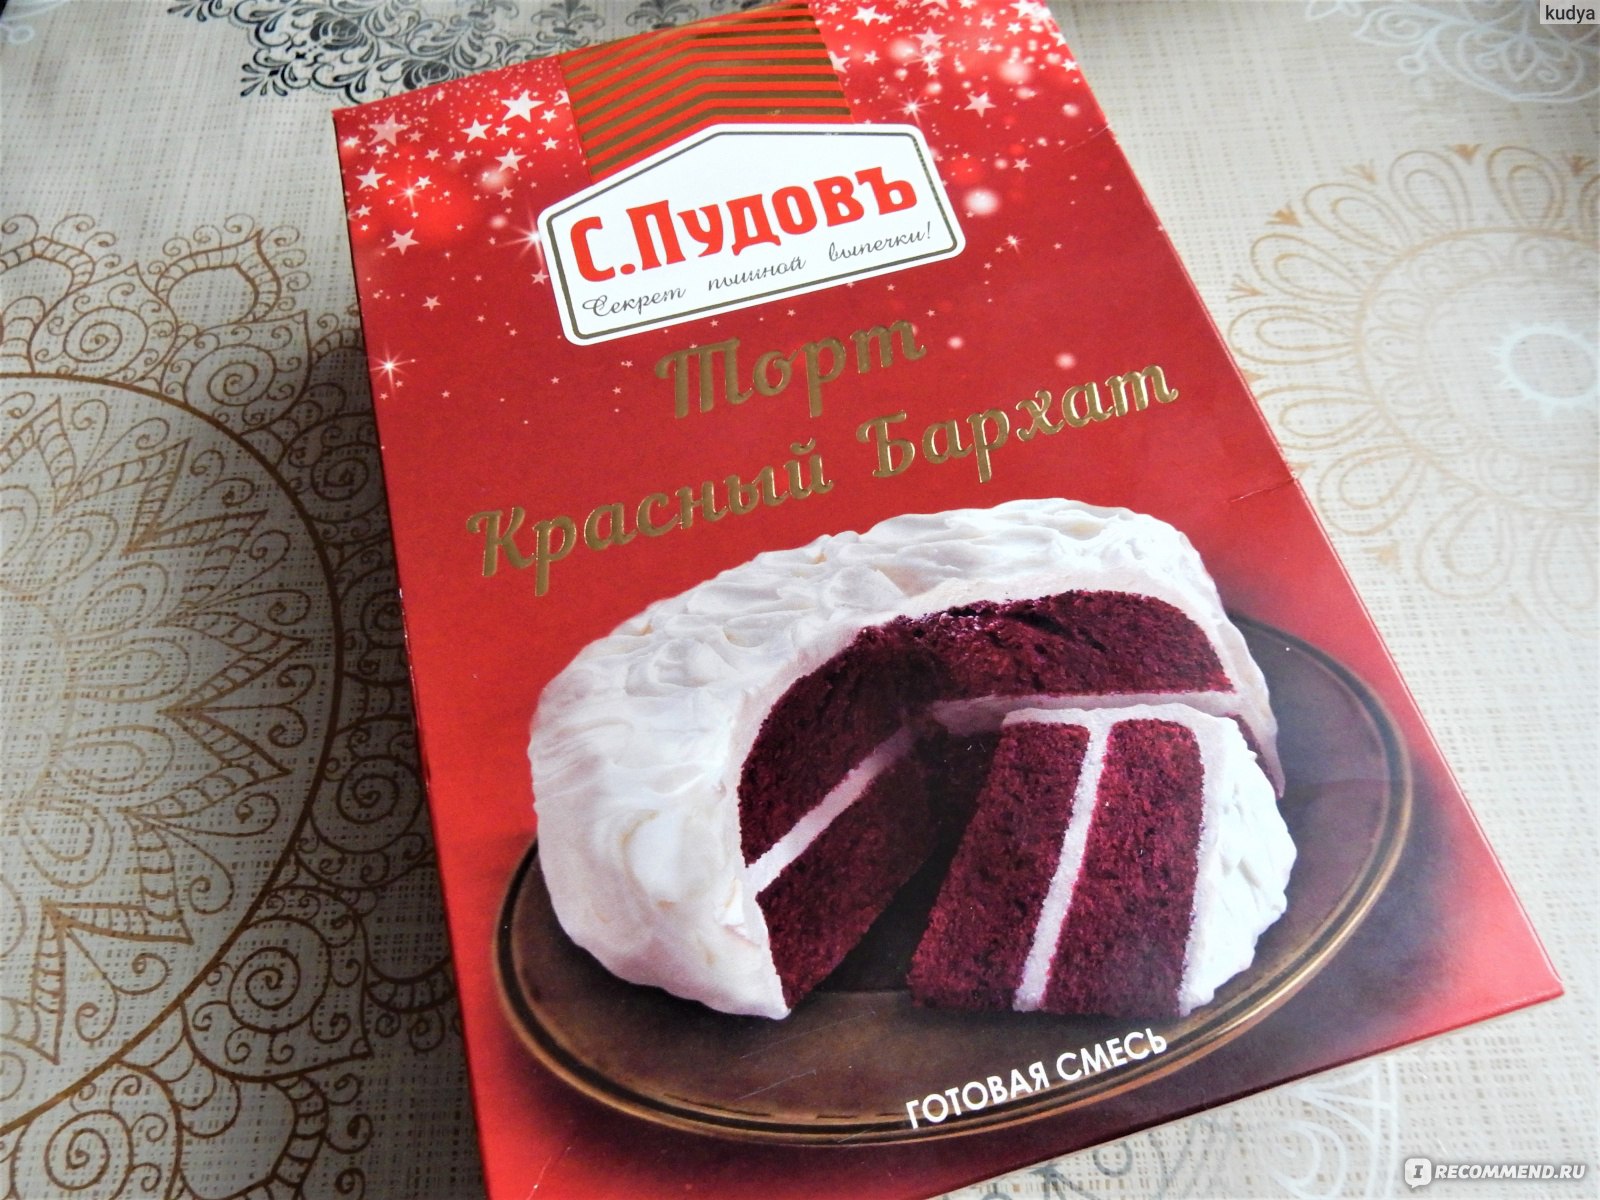 С.Пудовъ мучная смесь торт красный бархат, 0.4 кг